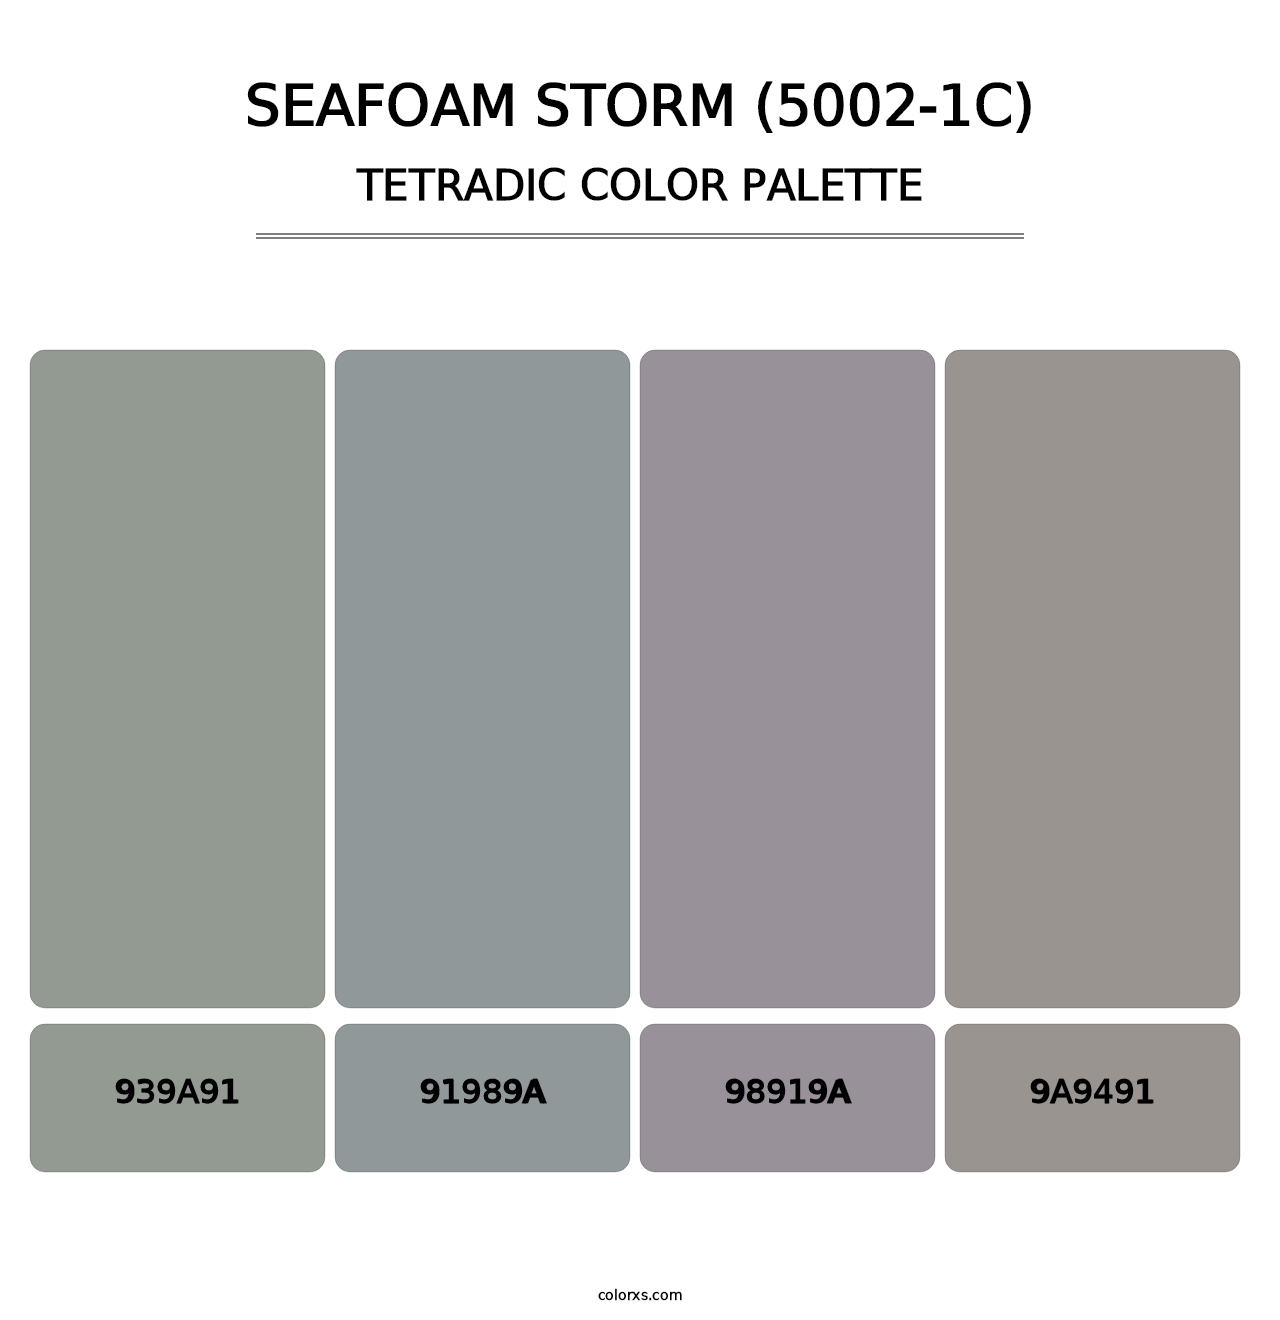 Seafoam Storm (5002-1C) - Tetradic Color Palette